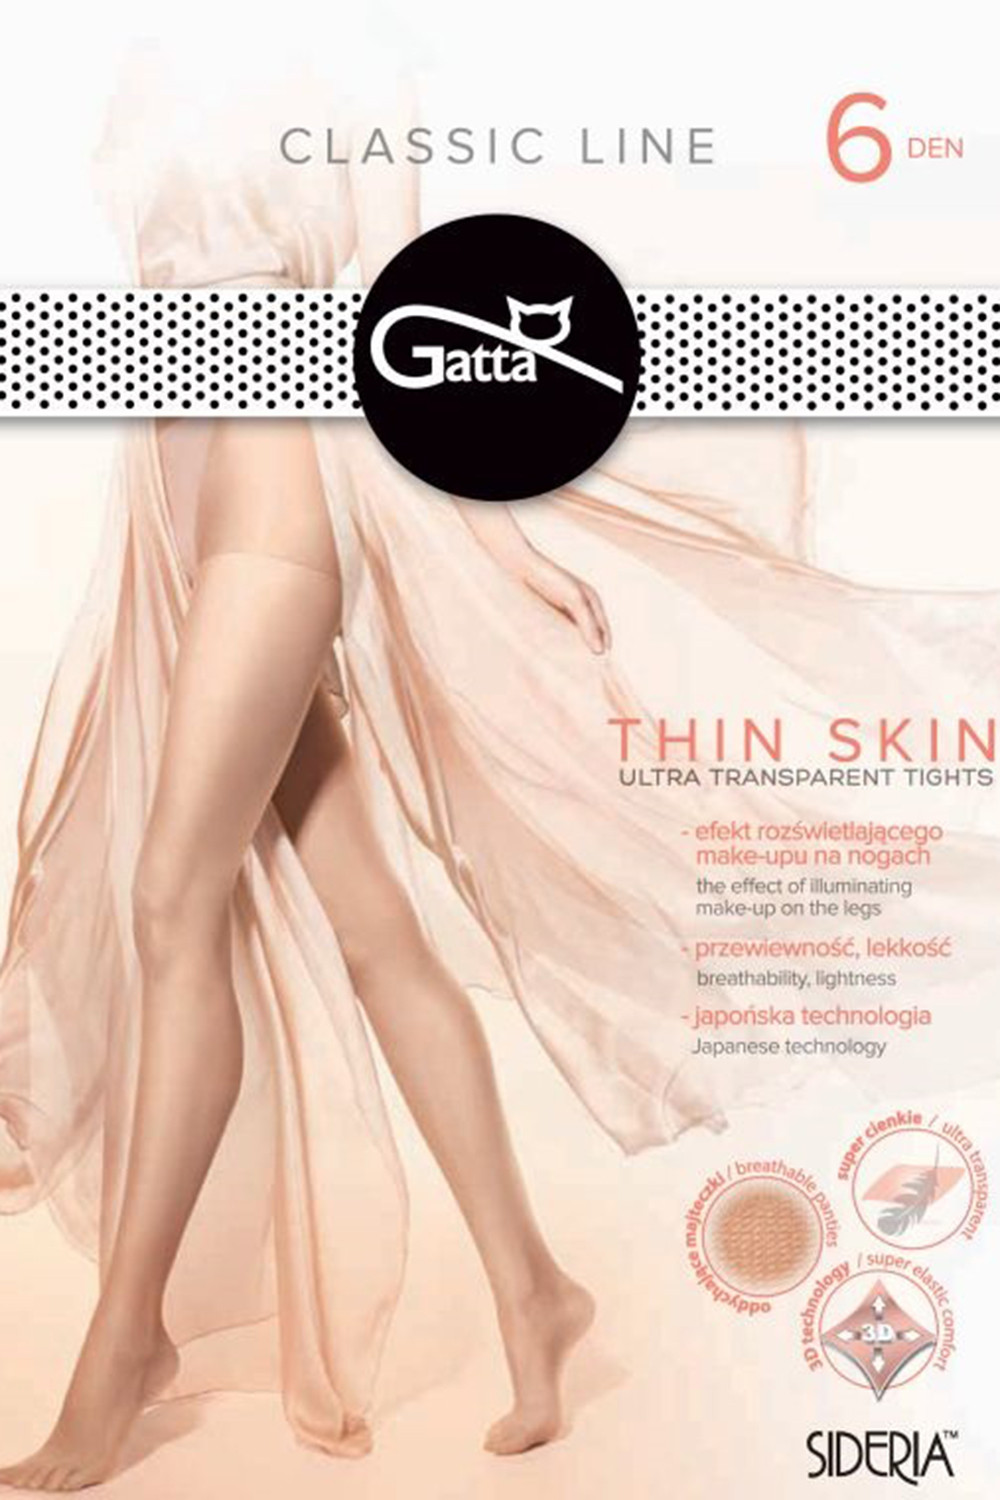 Gatta Thin Skin kolor:golden 3-M